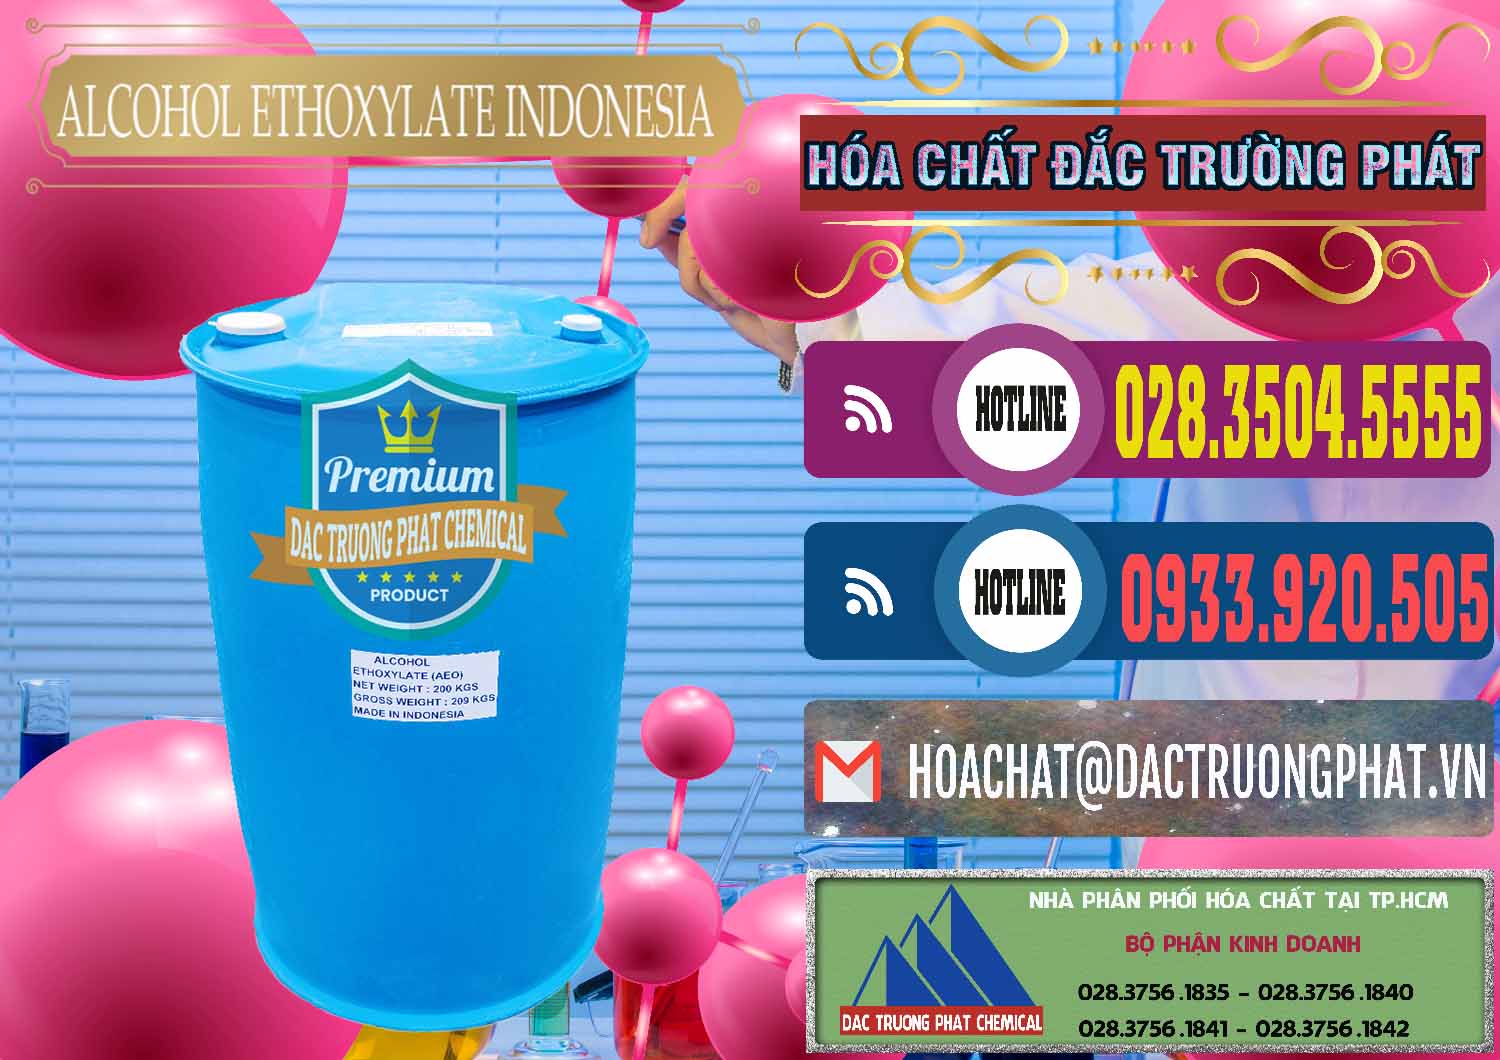 Cty bán - phân phối Alcohol Ethoxylate Indonesia - 0308 - Chuyên cung cấp & bán hóa chất tại TP.HCM - muabanhoachat.com.vn